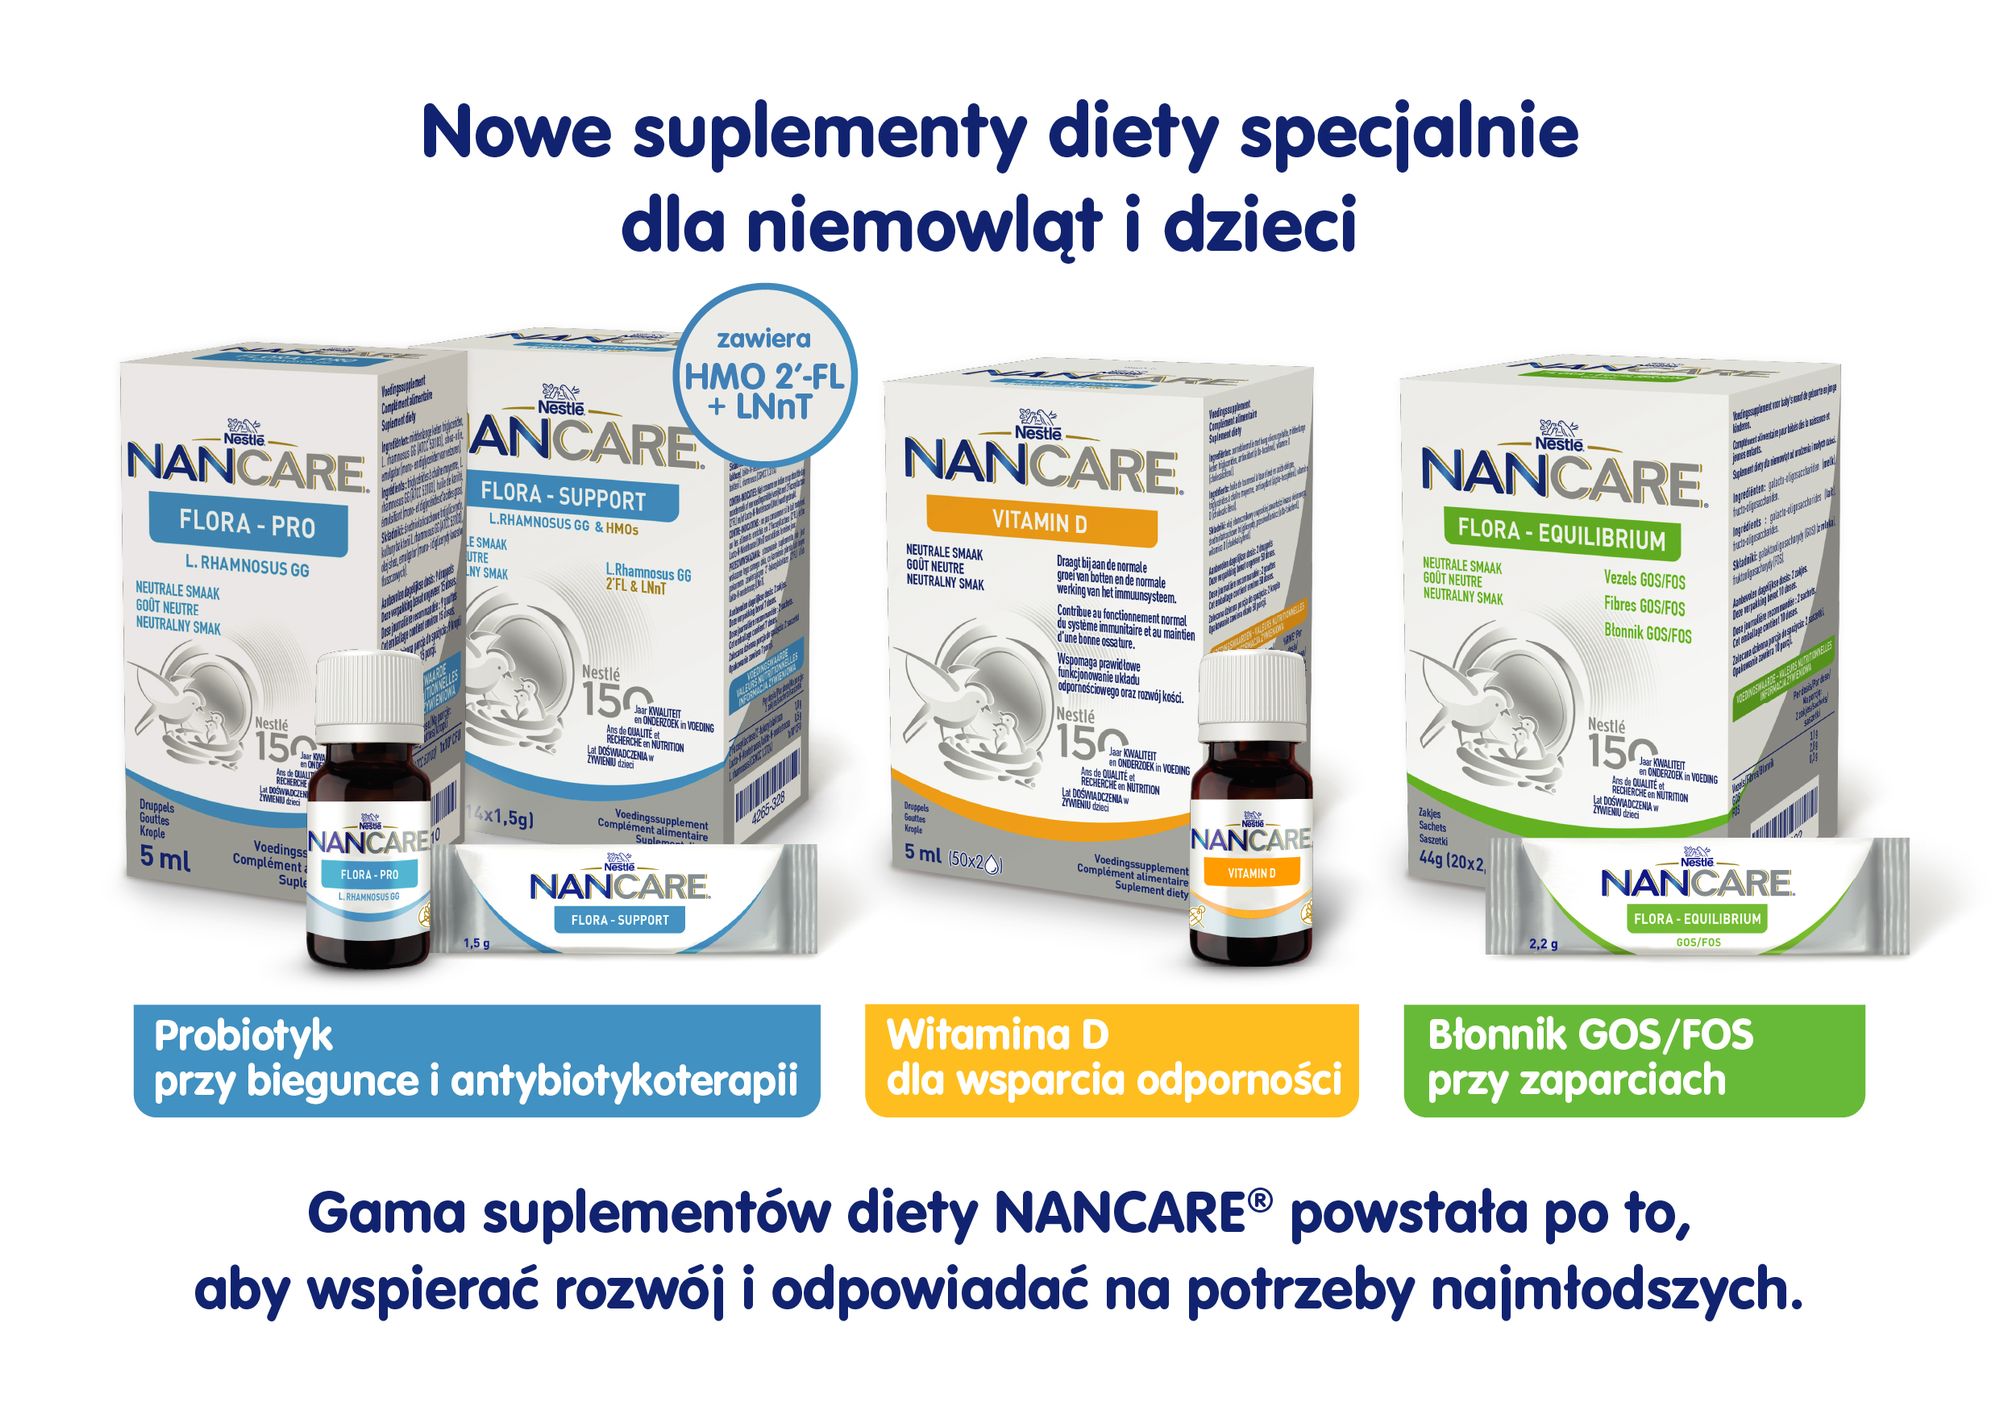 Nowe suplementy diety NANCARE stworzone dla najmłodszych